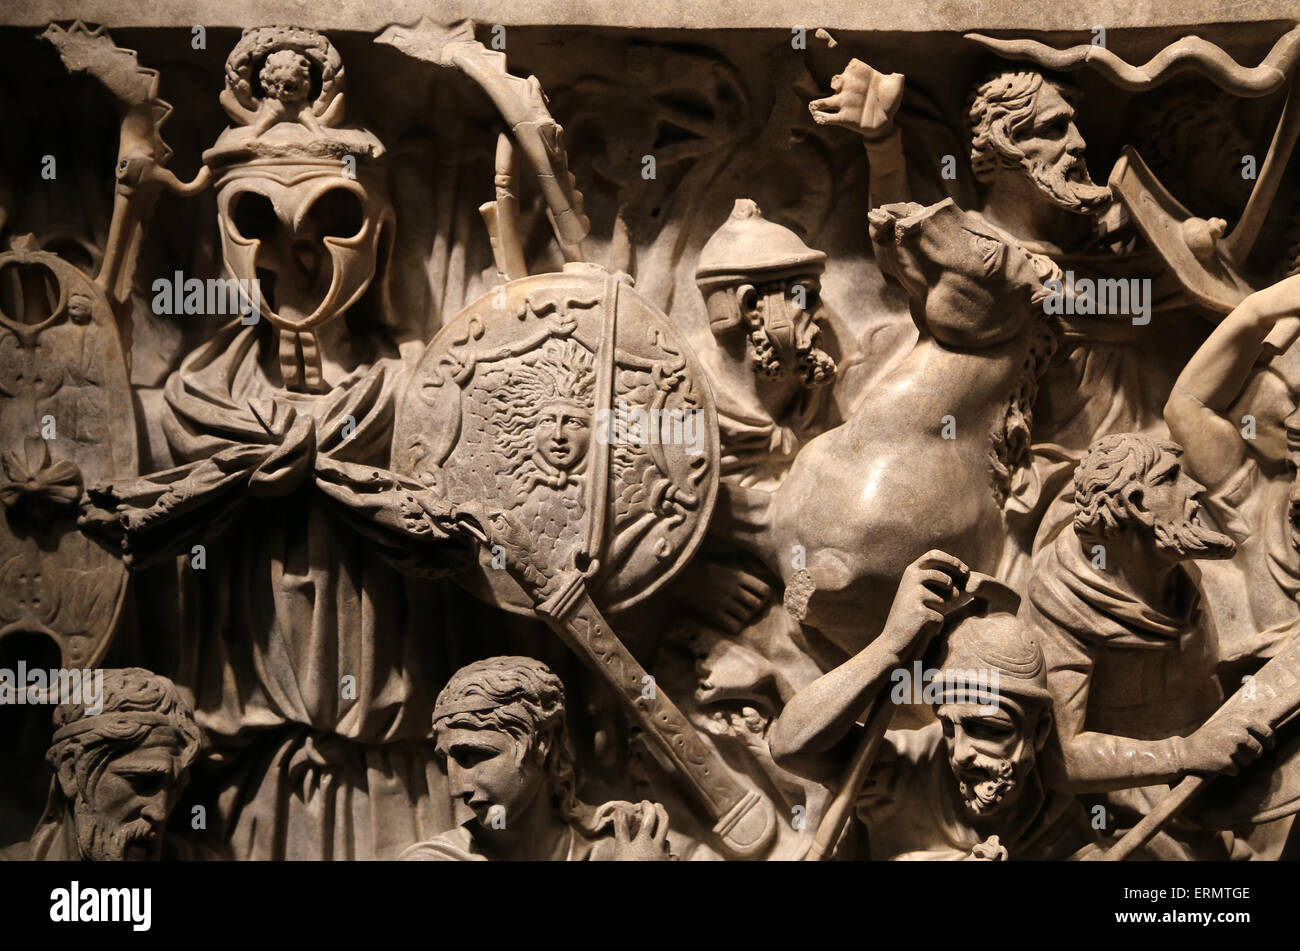 Portonaccio sarcophage. 180 AD. Bataille entre Romains et germanistique dans Marcomannics les guerres. Musée National Romain. Palace Massimo Banque D'Images